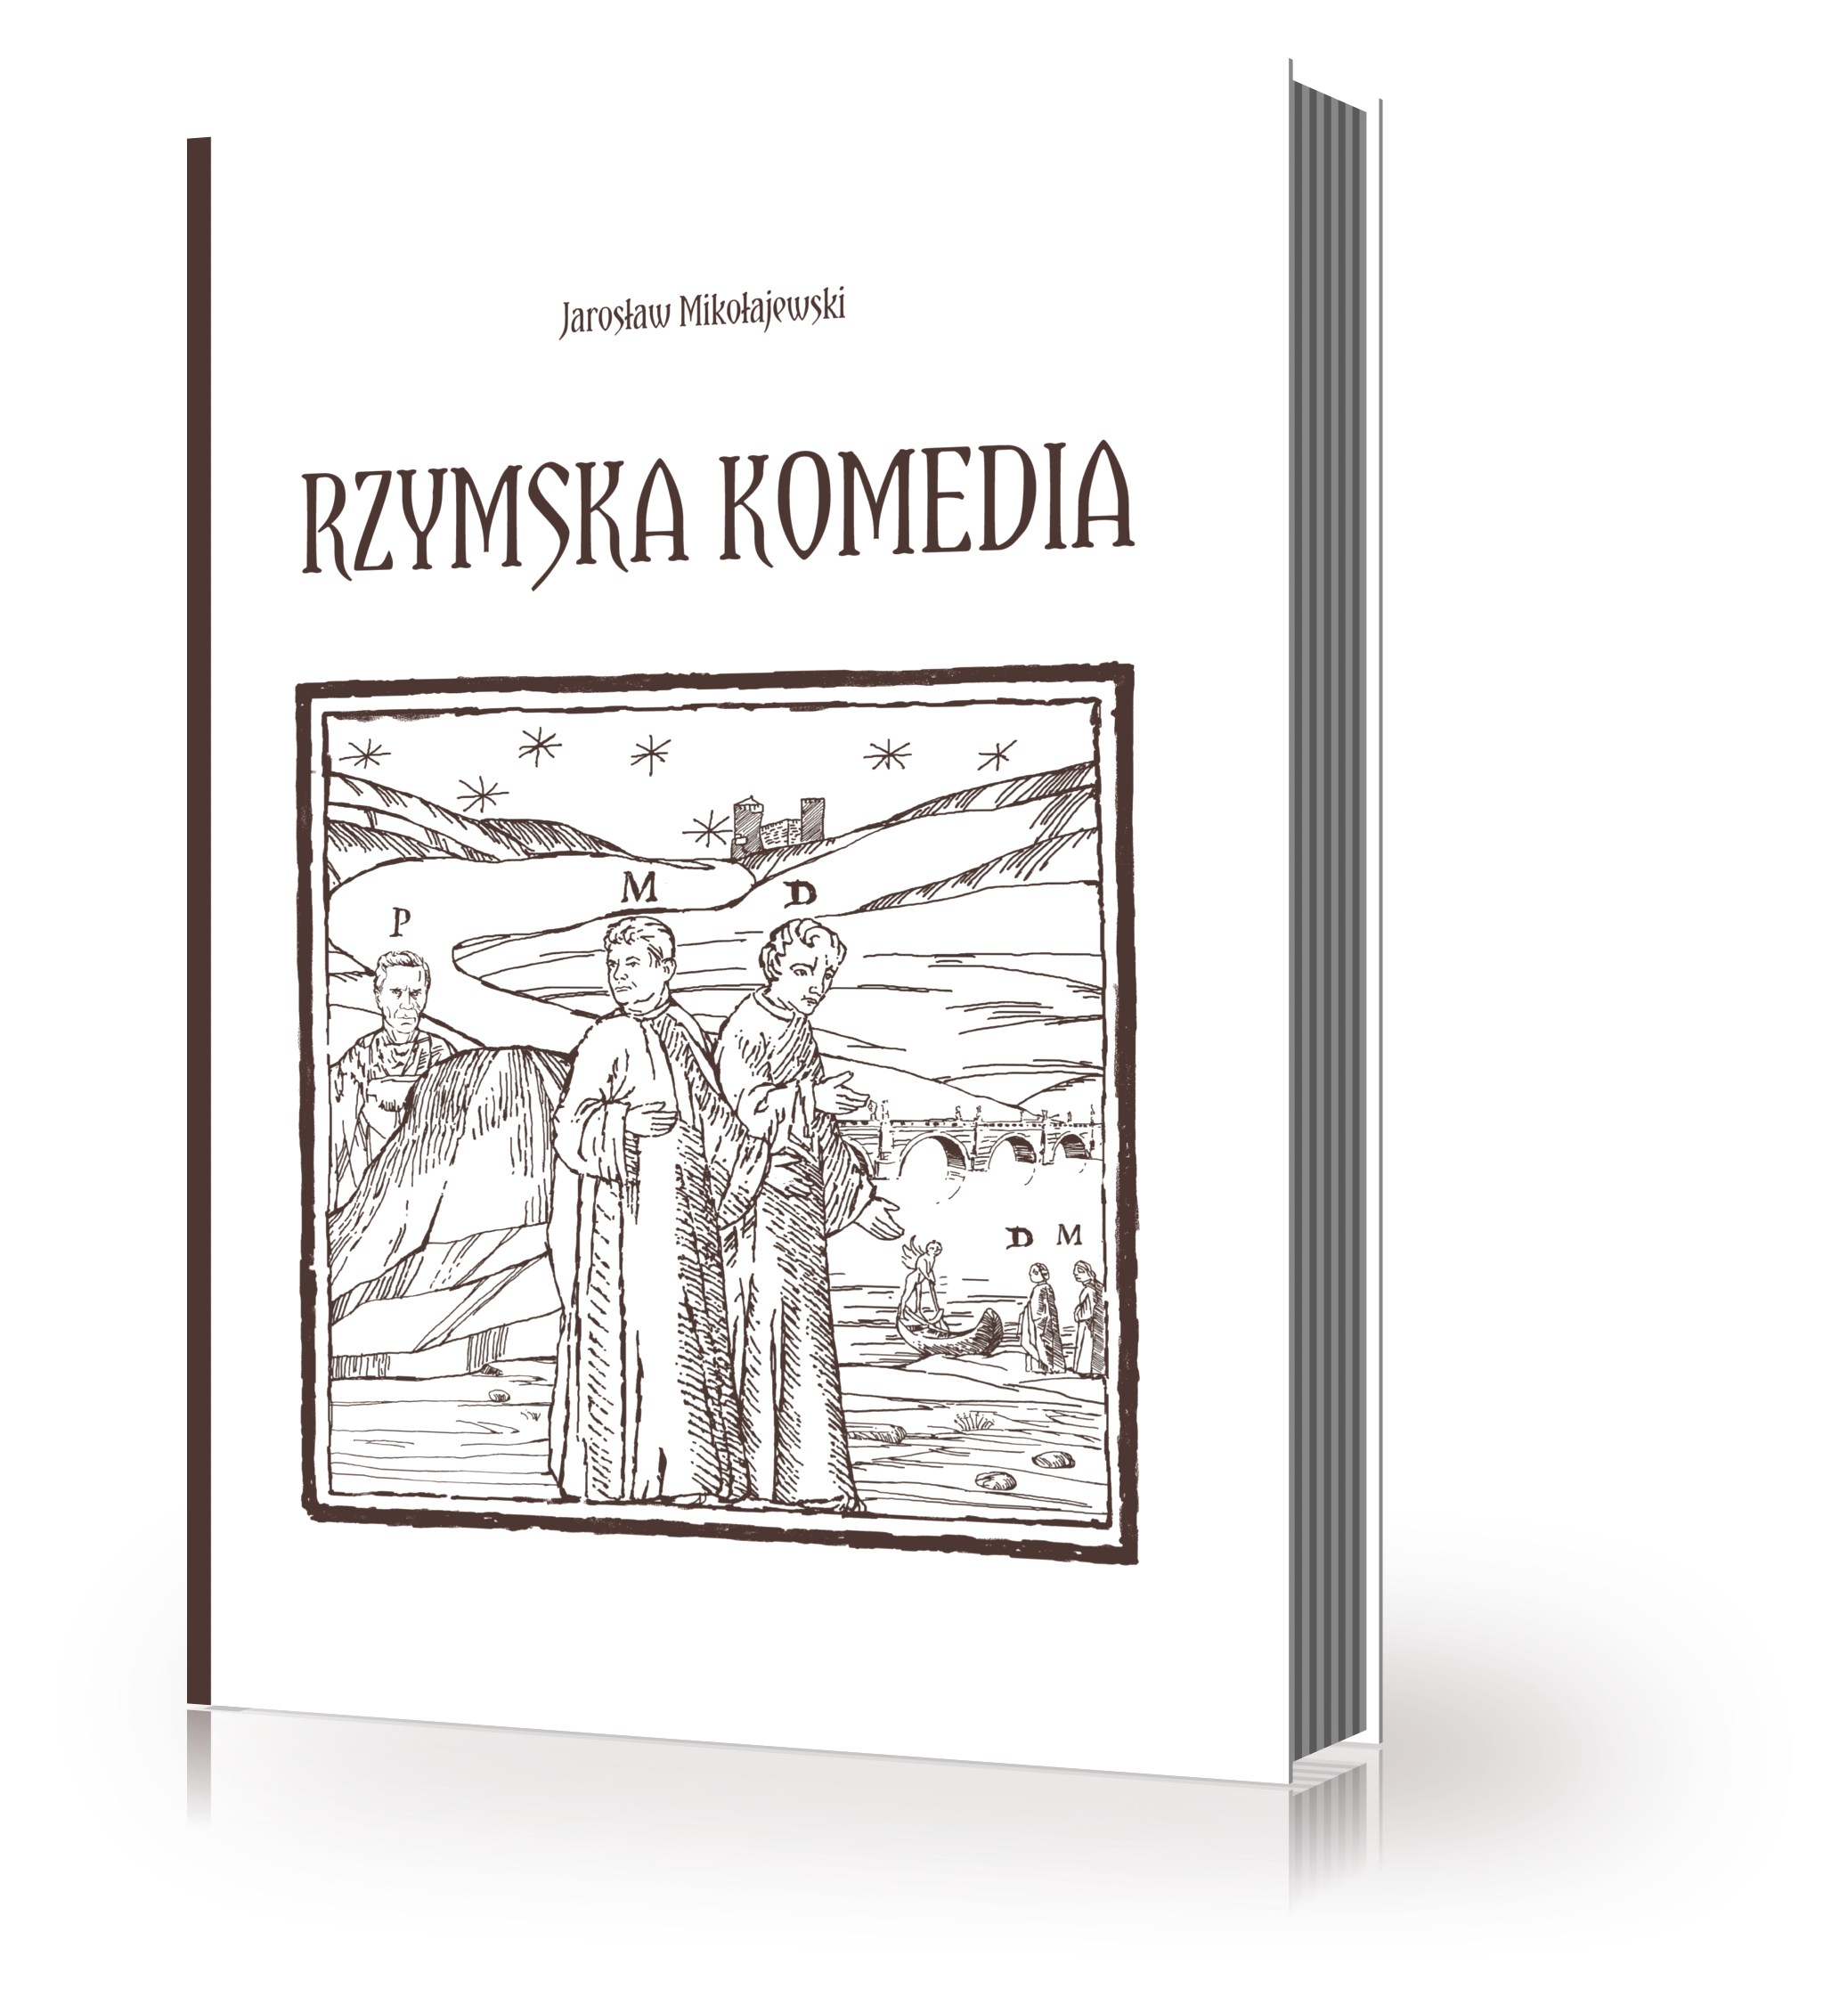 Okładka książki "Rzymska Komedia" Jarosława Mikołajewskiego (źródło: materiały prasowe wydawnictwa).